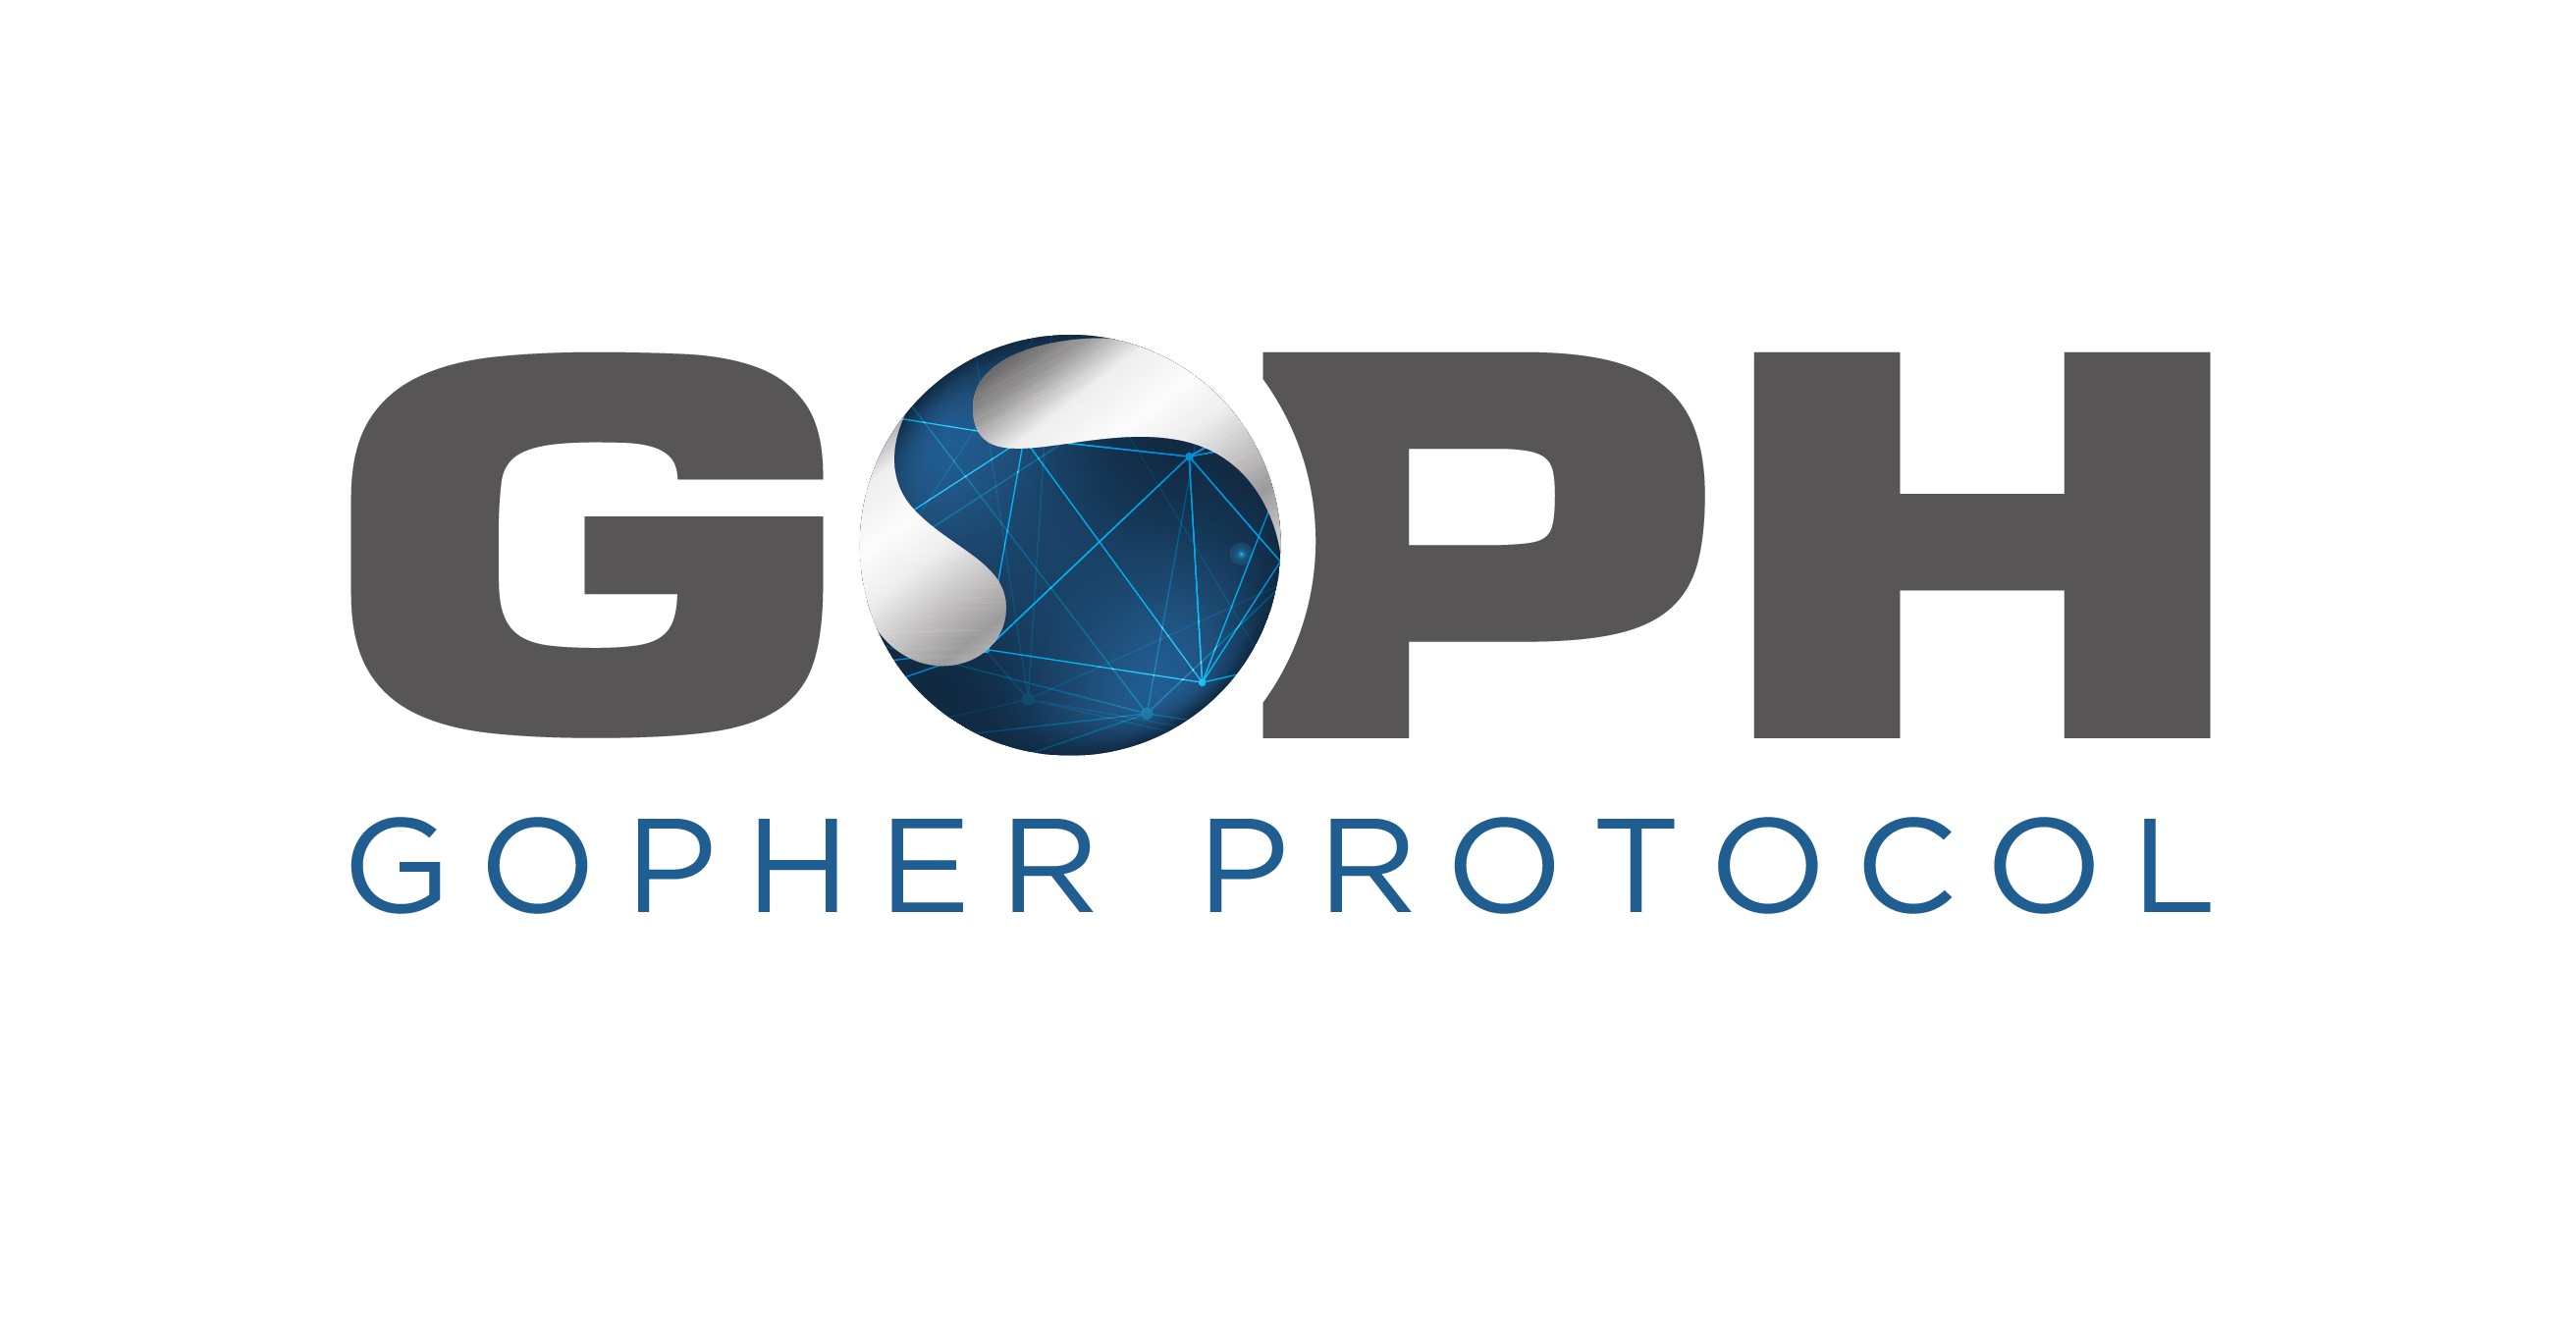 Gopher razvija gEYE sustav kibernetičke sigurnosti za AI IoT mrežu